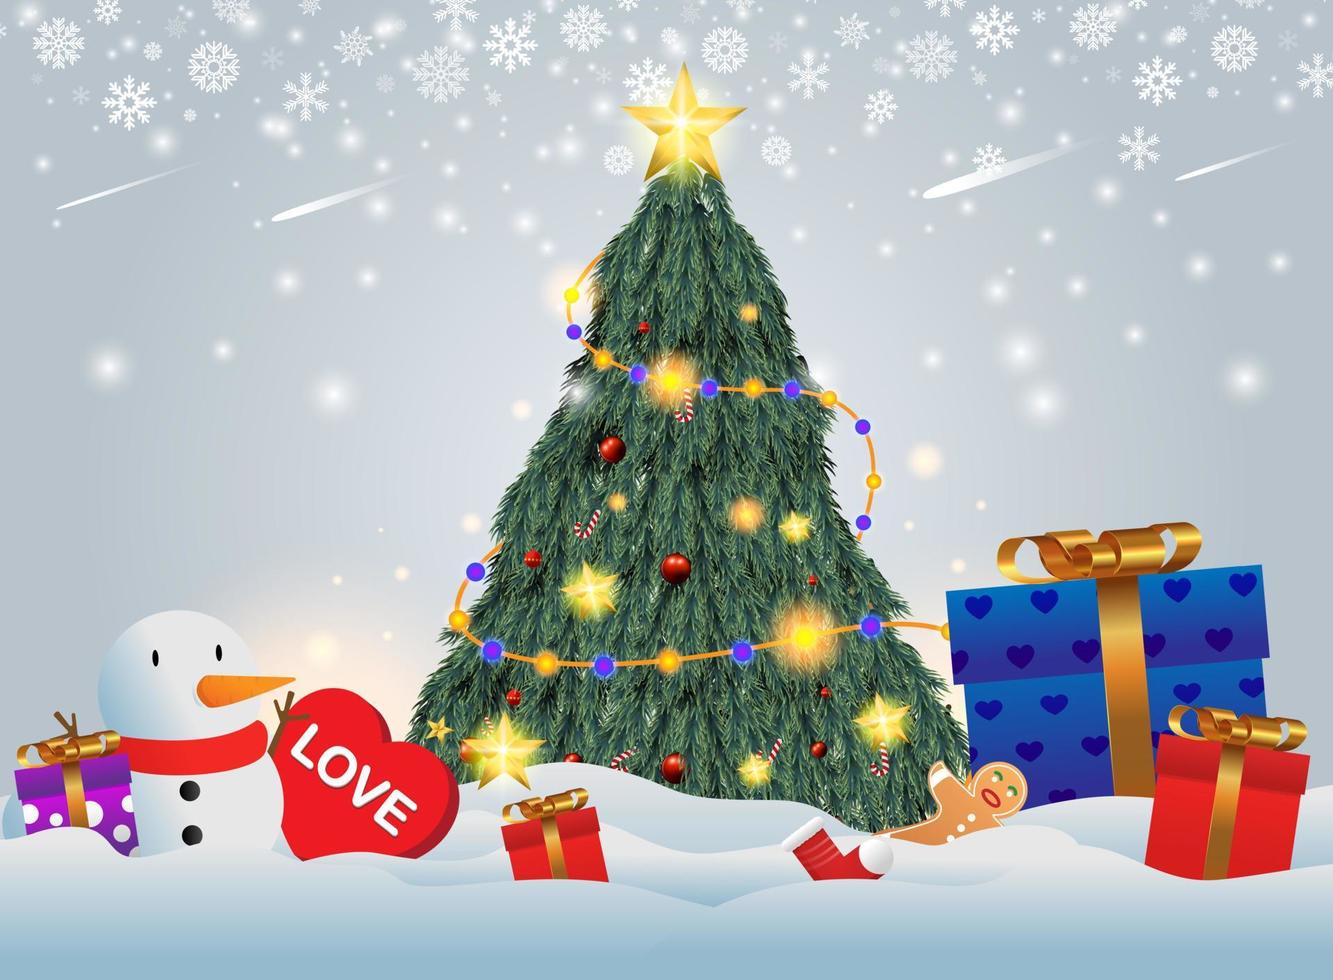 regali posti sotto l'albero di natale. regalo di Babbo Natale nella neve. vari regali come orsacchiotti, scatole regalo e caramelle. vettore